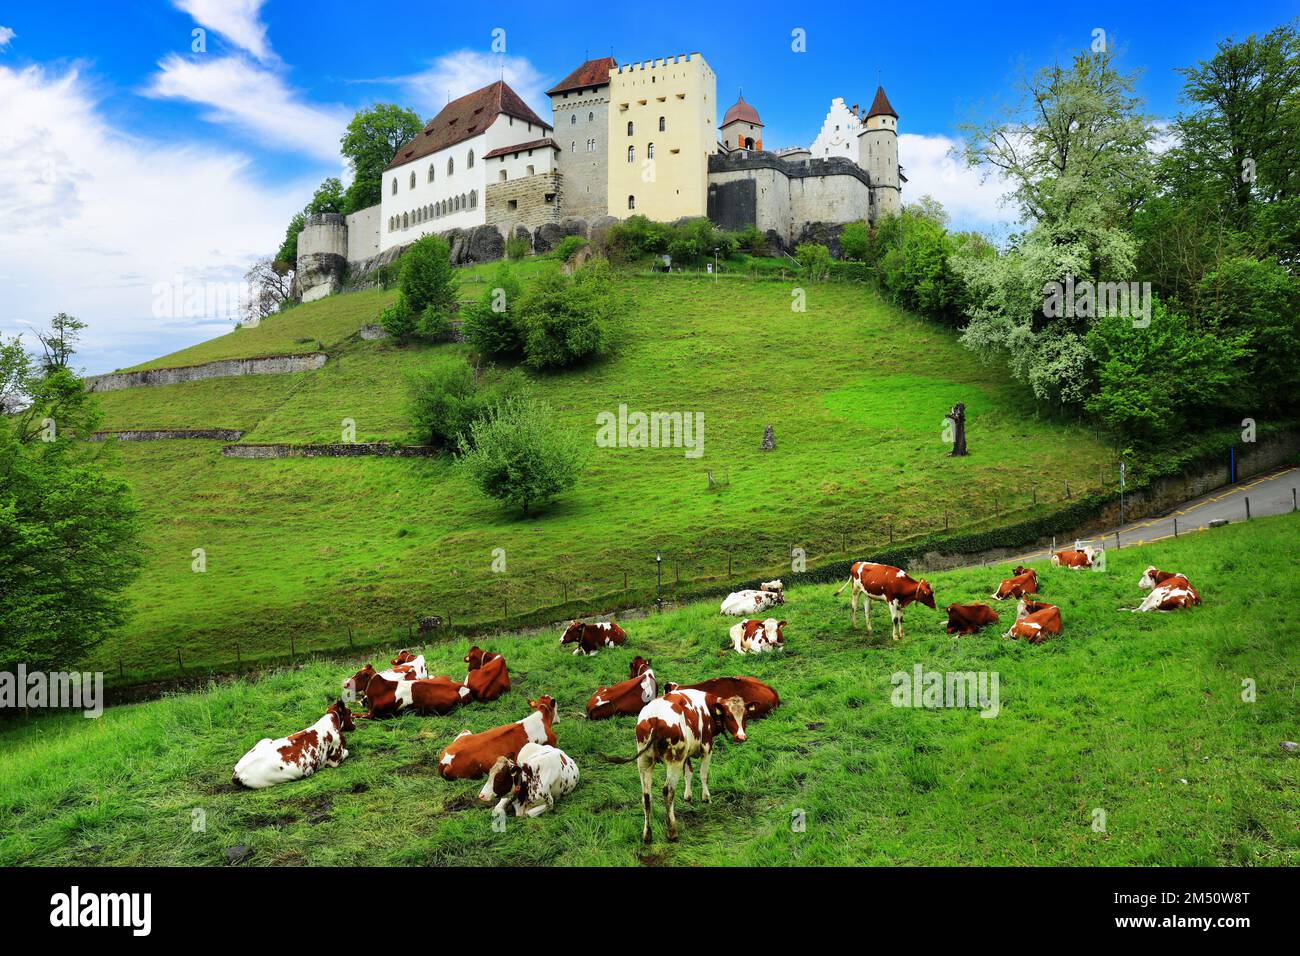 Malerische Schweizer Landschaft mit mittelalterlichen Burgen, grünen Weiden und Kühen. Lenzburg, Schweiz Stockfoto